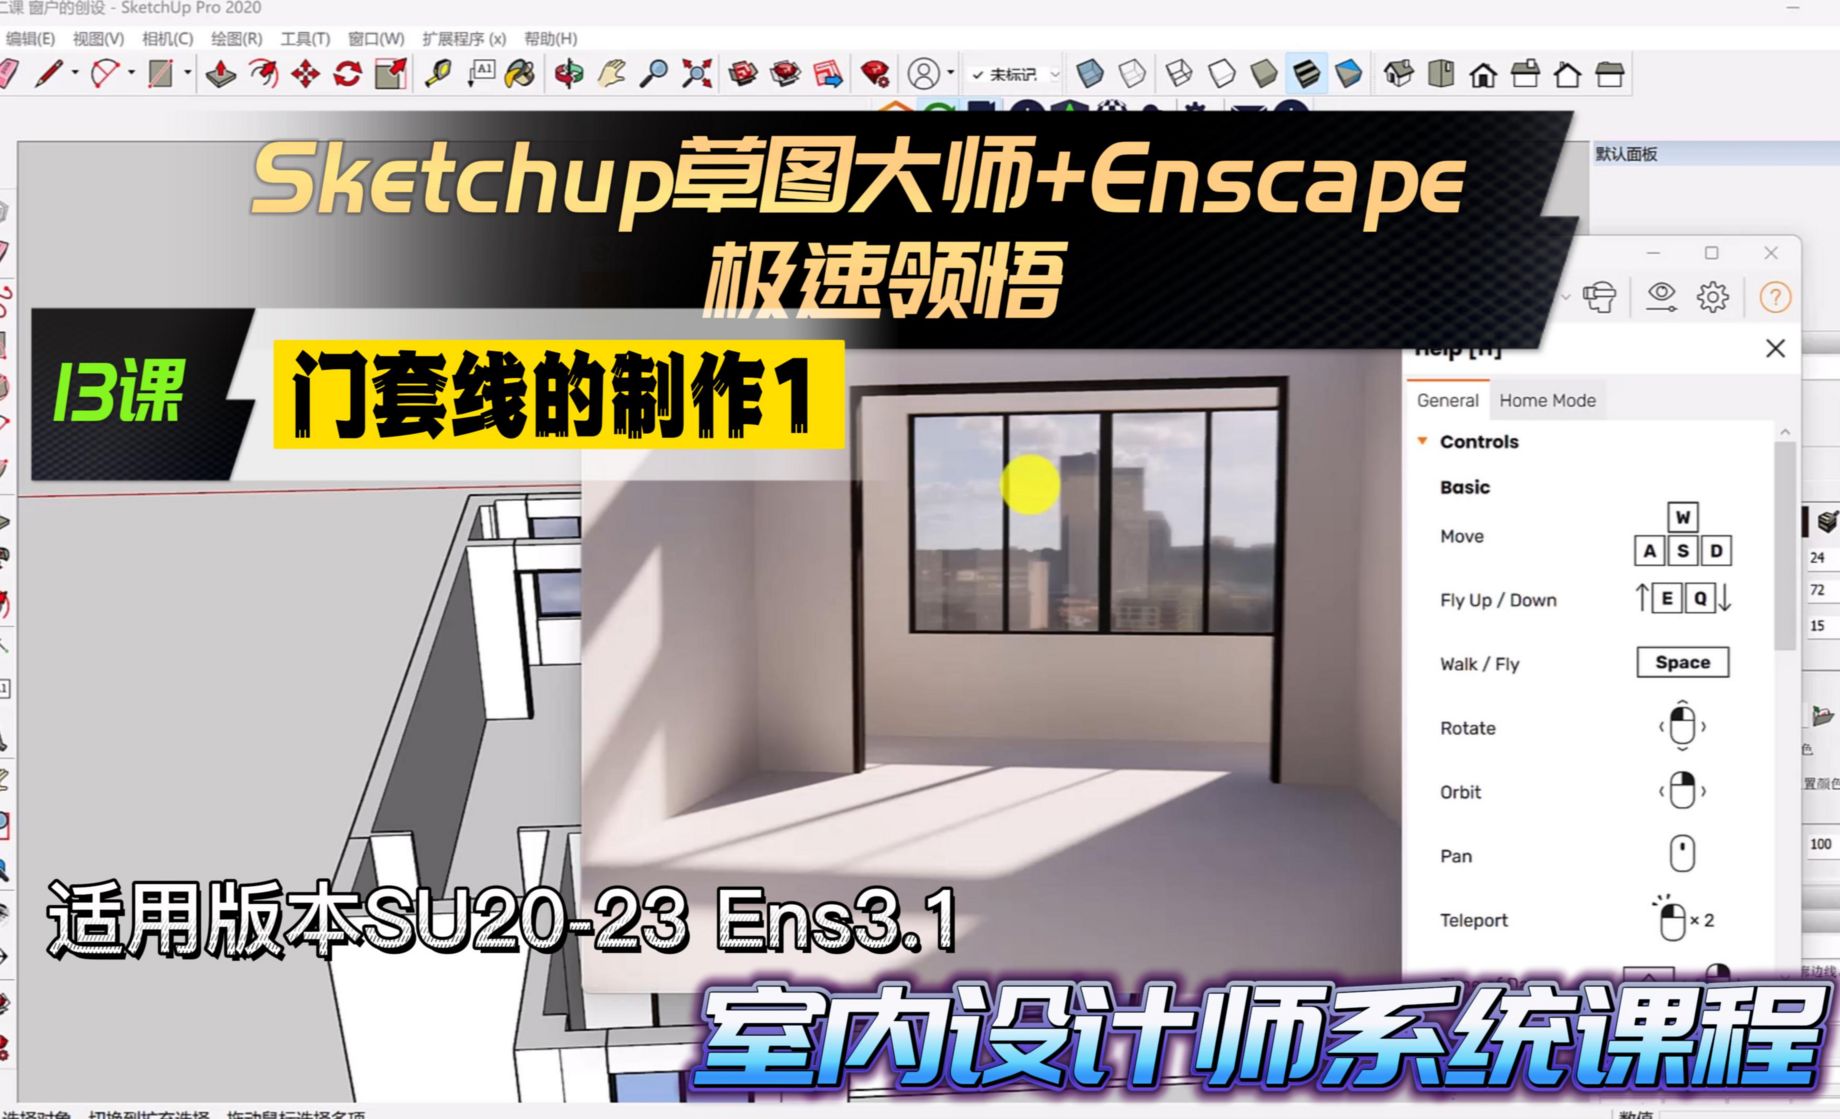 Sketchup+Enscape室内设计极速领悟-门套线的制作1